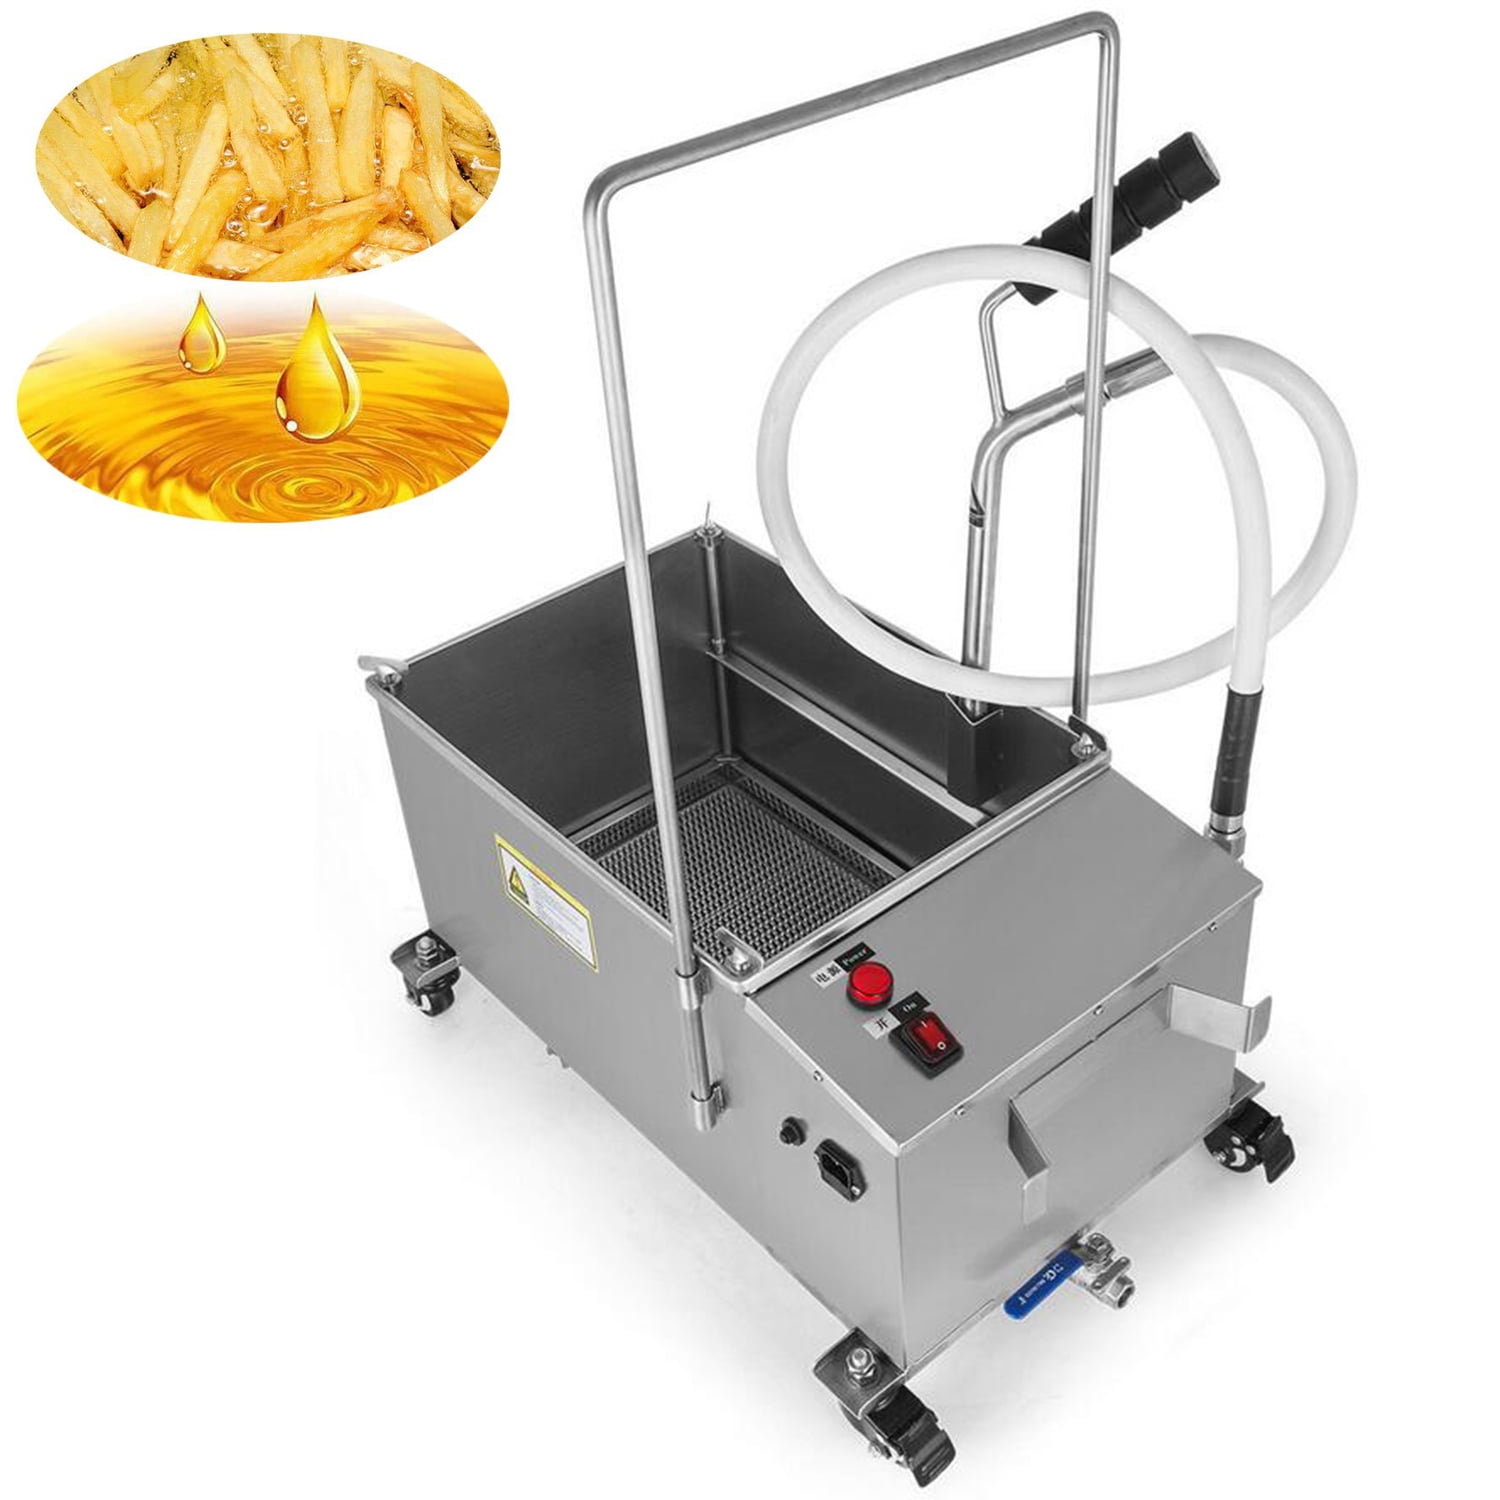 40L Fryer Oil Filter Machine Mobile Commercial Oil Filter System Kitchen 